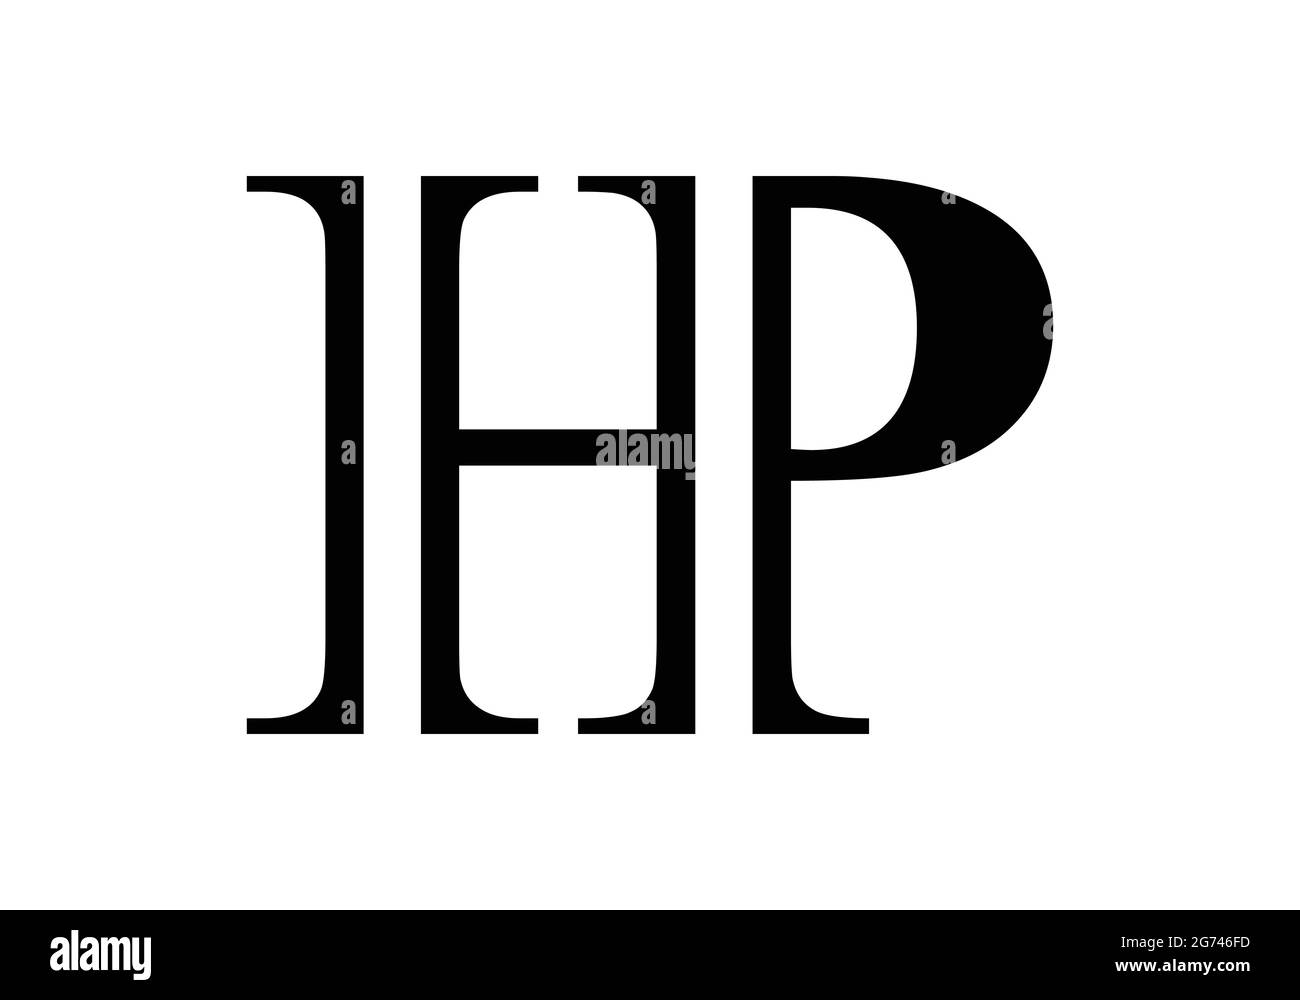 Lettera iniziale del monogramma modello vettoriale del logo HP H P Letter Logo Design per studio legale e legale, negozio o altri servizi Illustrazione Vettoriale